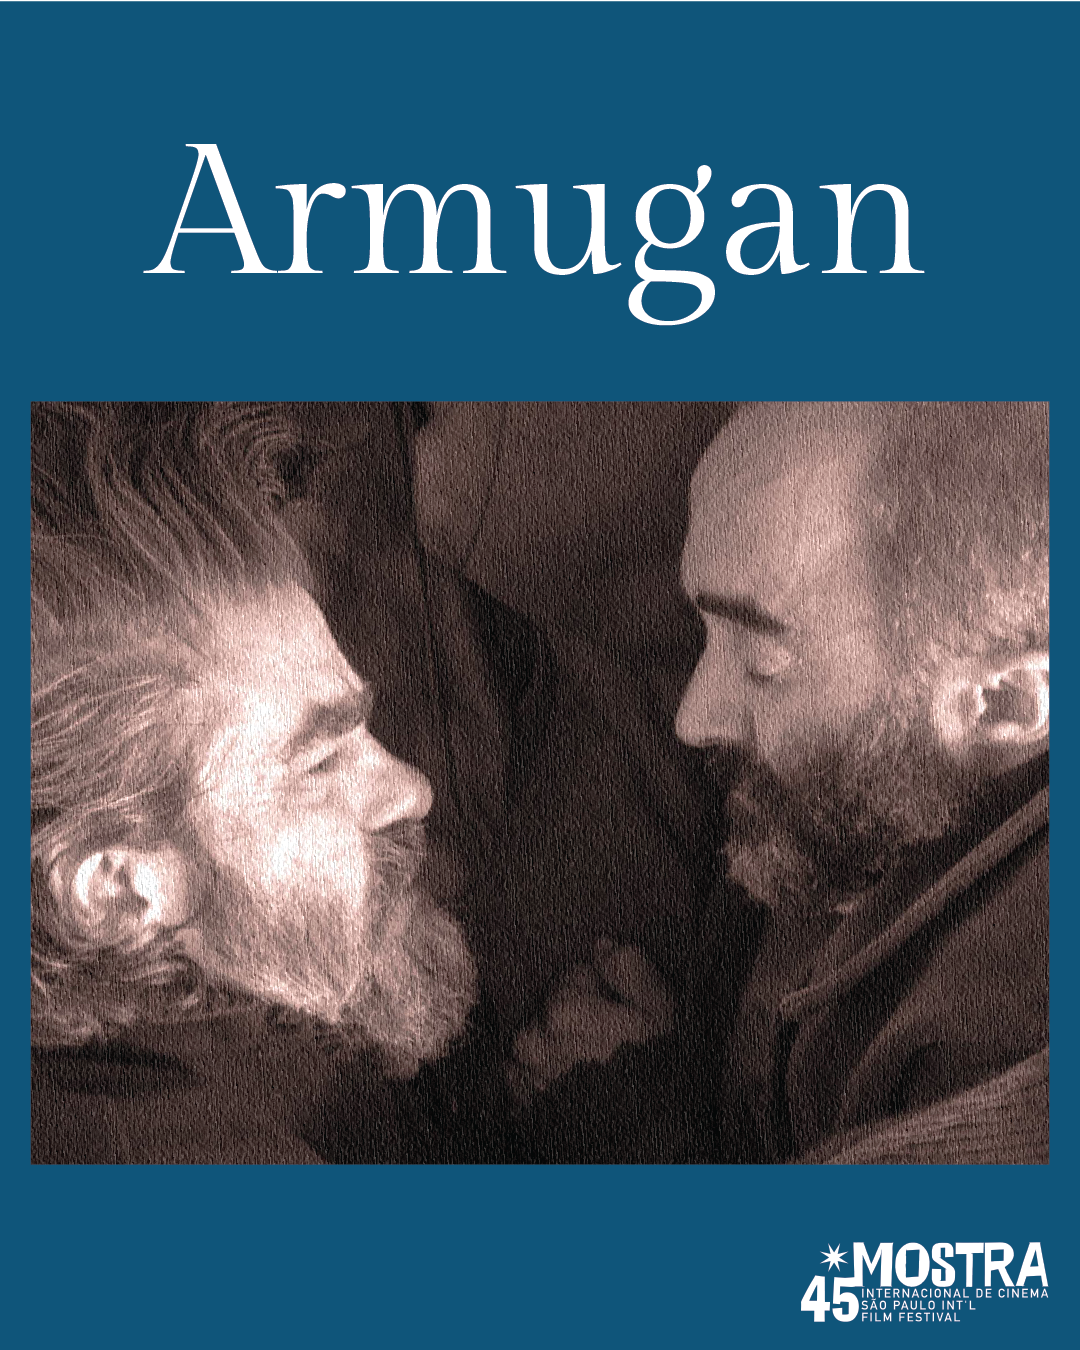 Armugan e sua reflexao sobre a morte